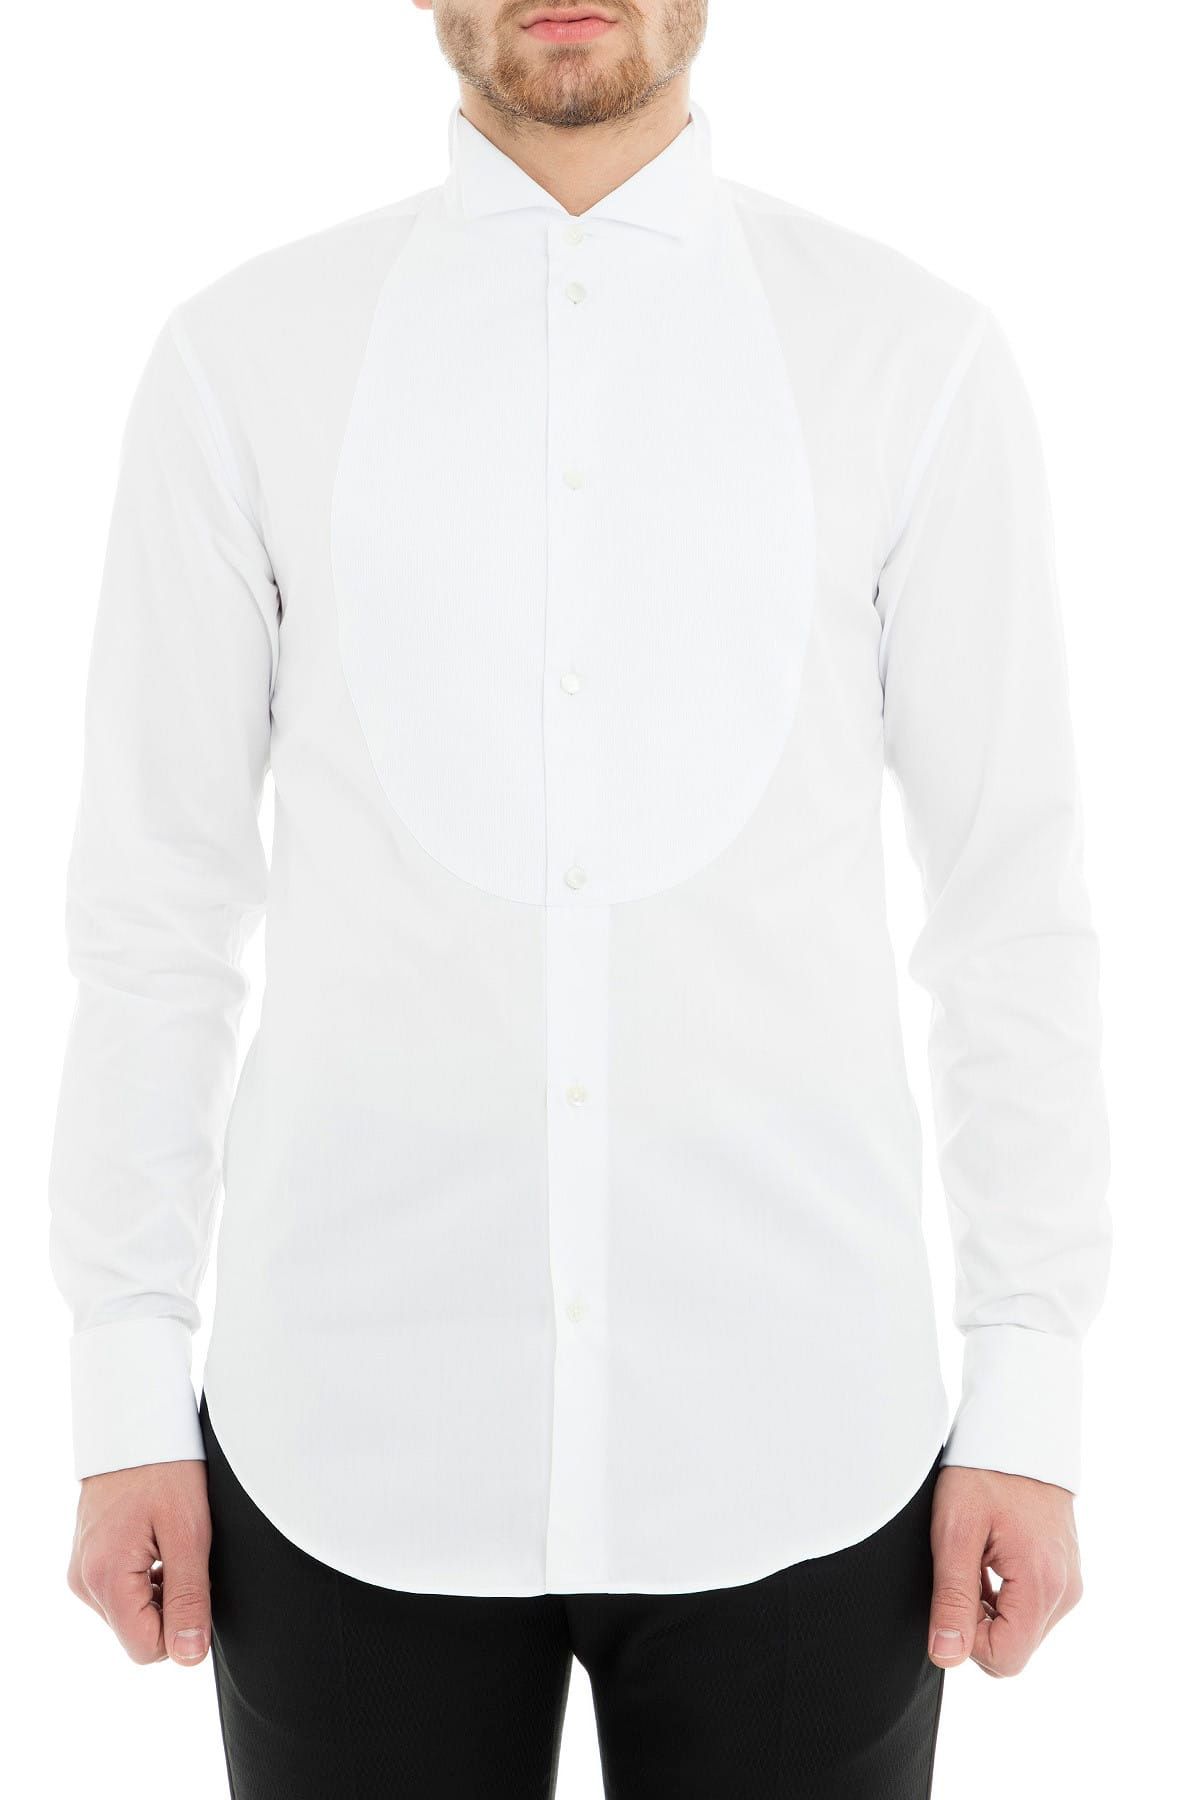 Emporio Armani Erkek Beyaz Gömlek 21C70G 21C29 101